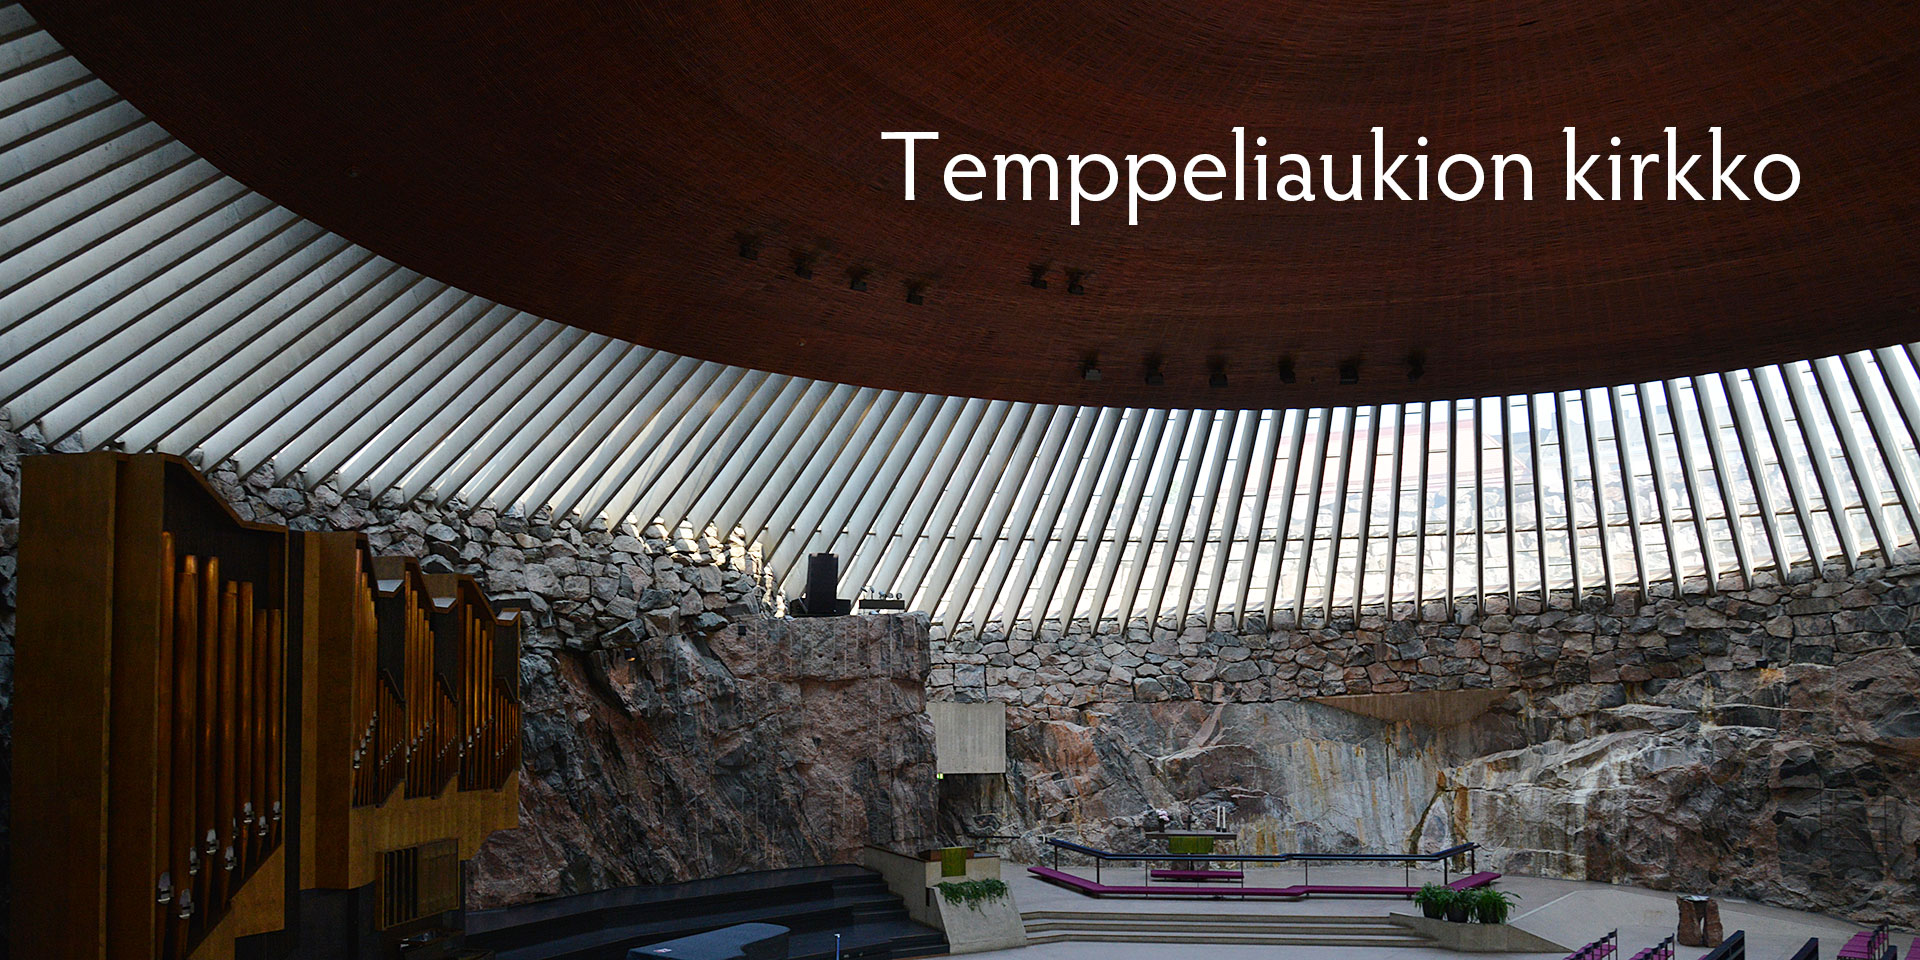 北欧フィーカ フィンランド ヘルシンキの旅 岩の教会テンペリアウキオと シベリウス公園 Scandinavian Fika